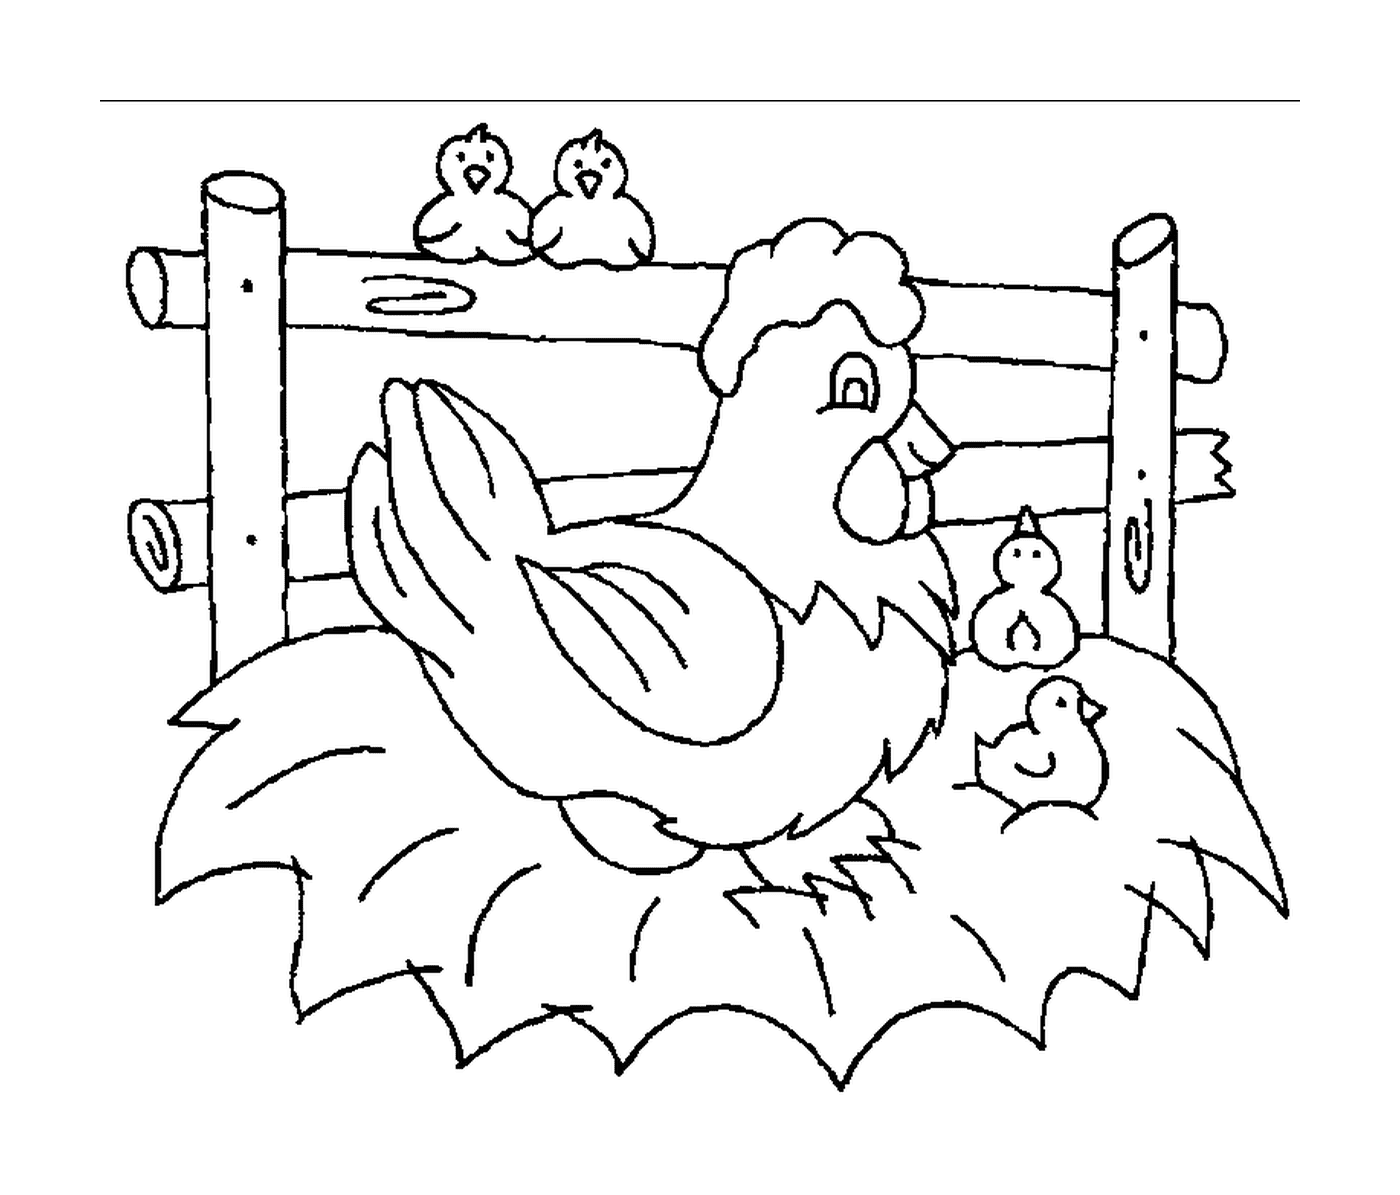  मुर्गी और तीन बच्चे 